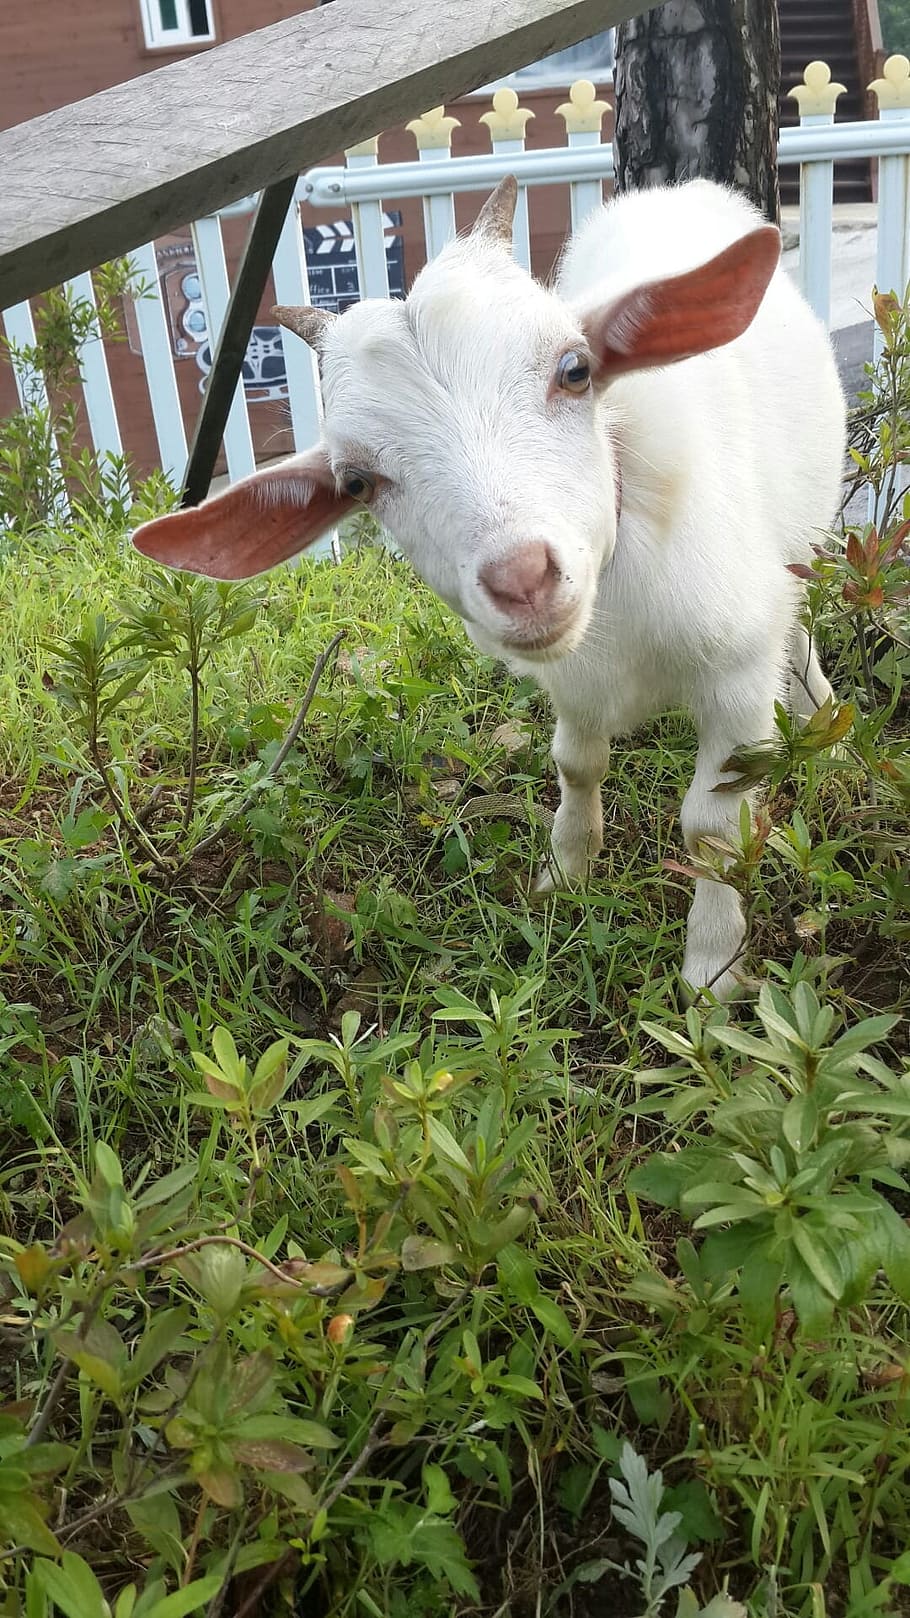 Goat, Animal, White, Baby, white goat, baby goats, farm, agriculture, livestock, rural Scene